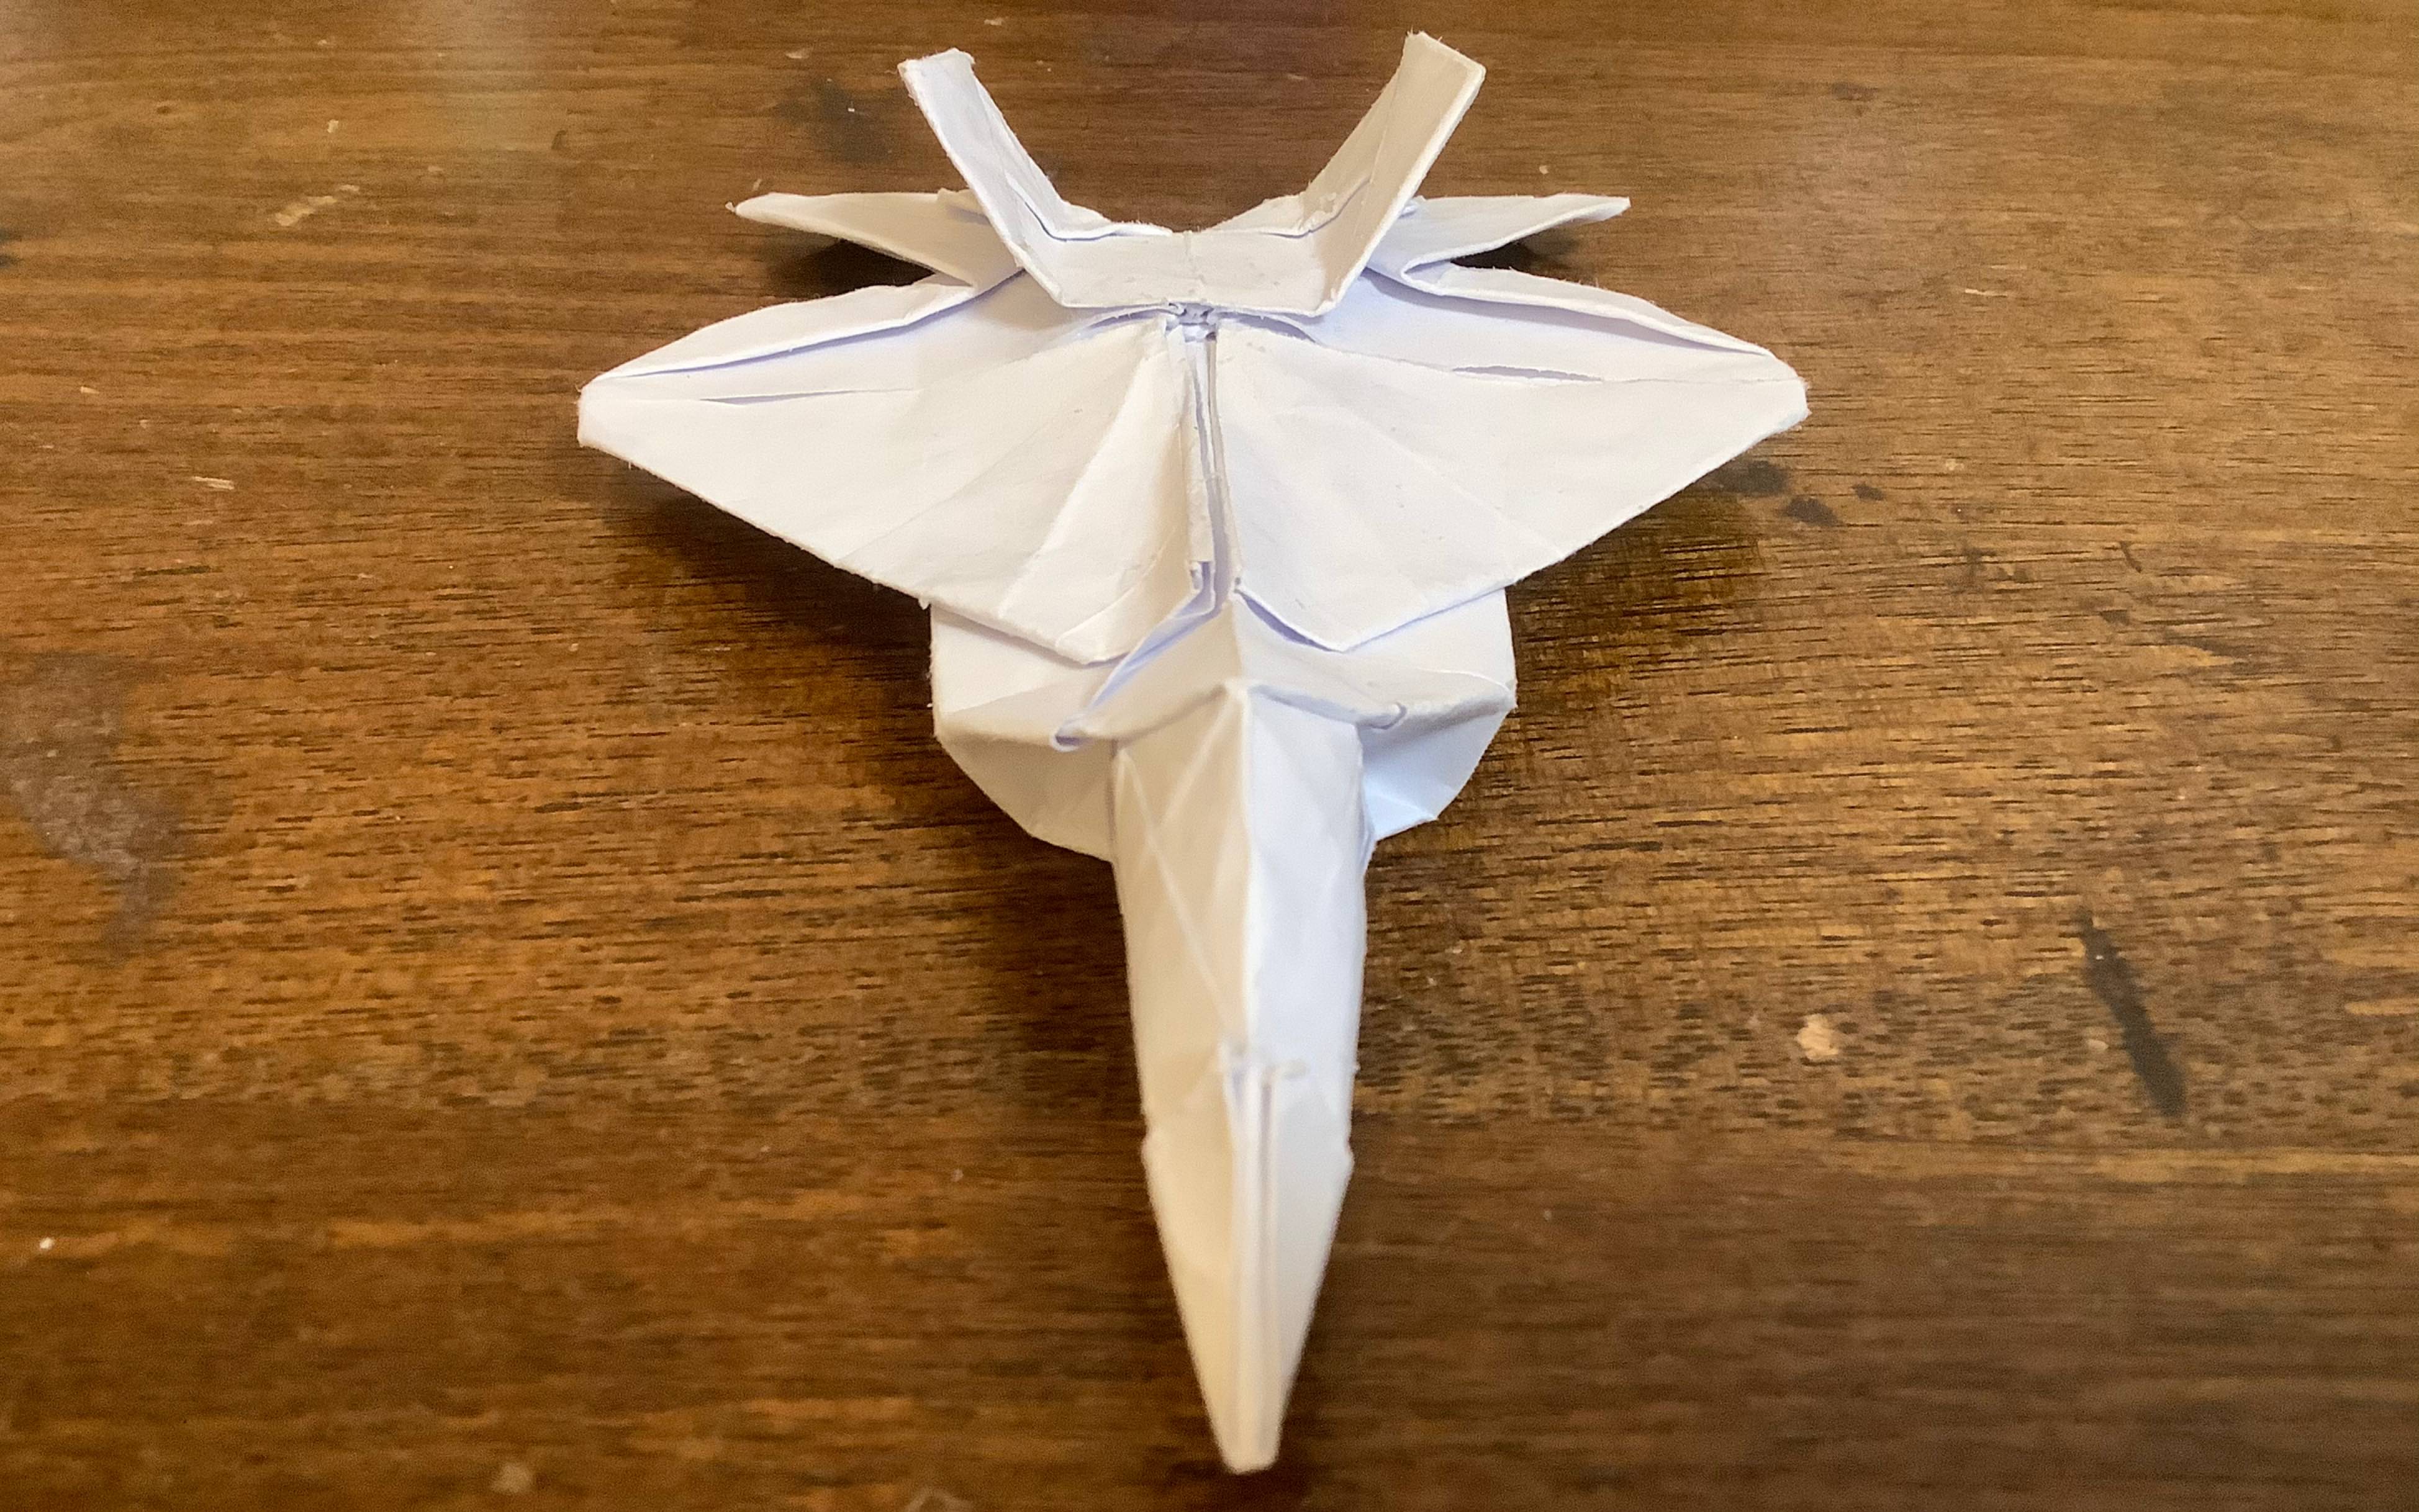 【折纸展示】f22猛禽战斗机 设计:青木良